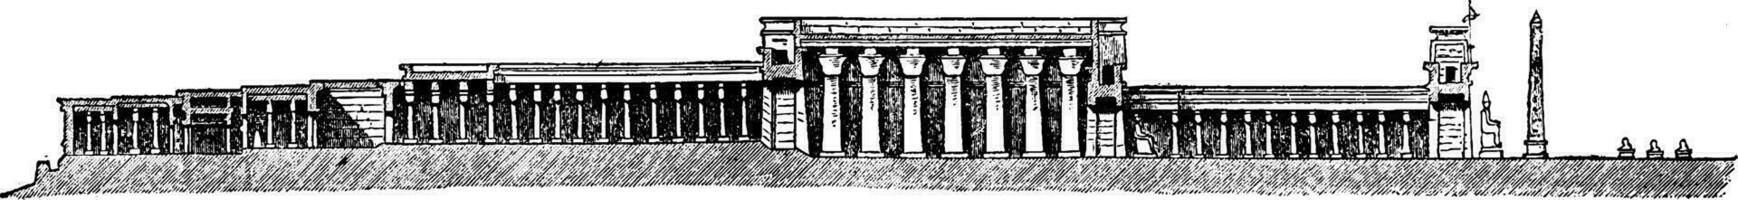 louxor temple, Amon, ancien gravure. vecteur